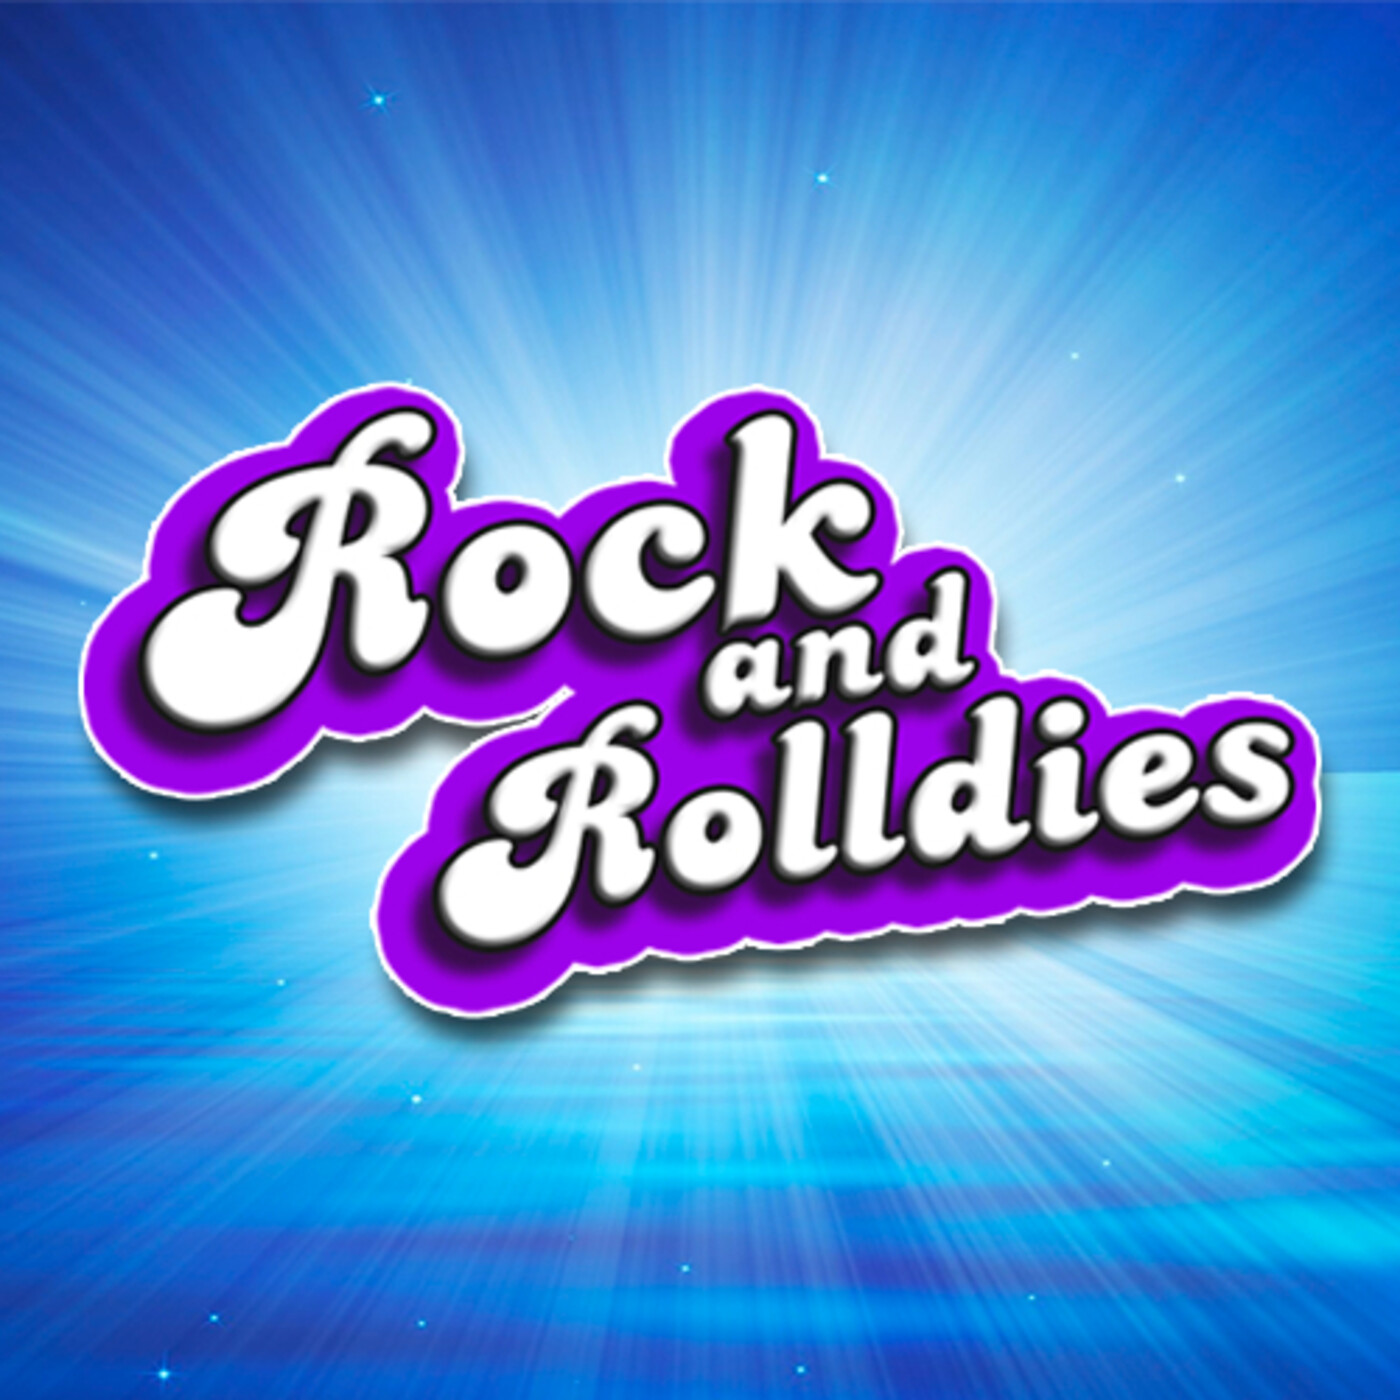 Rock and Rolldies 1 de marzo de 2024